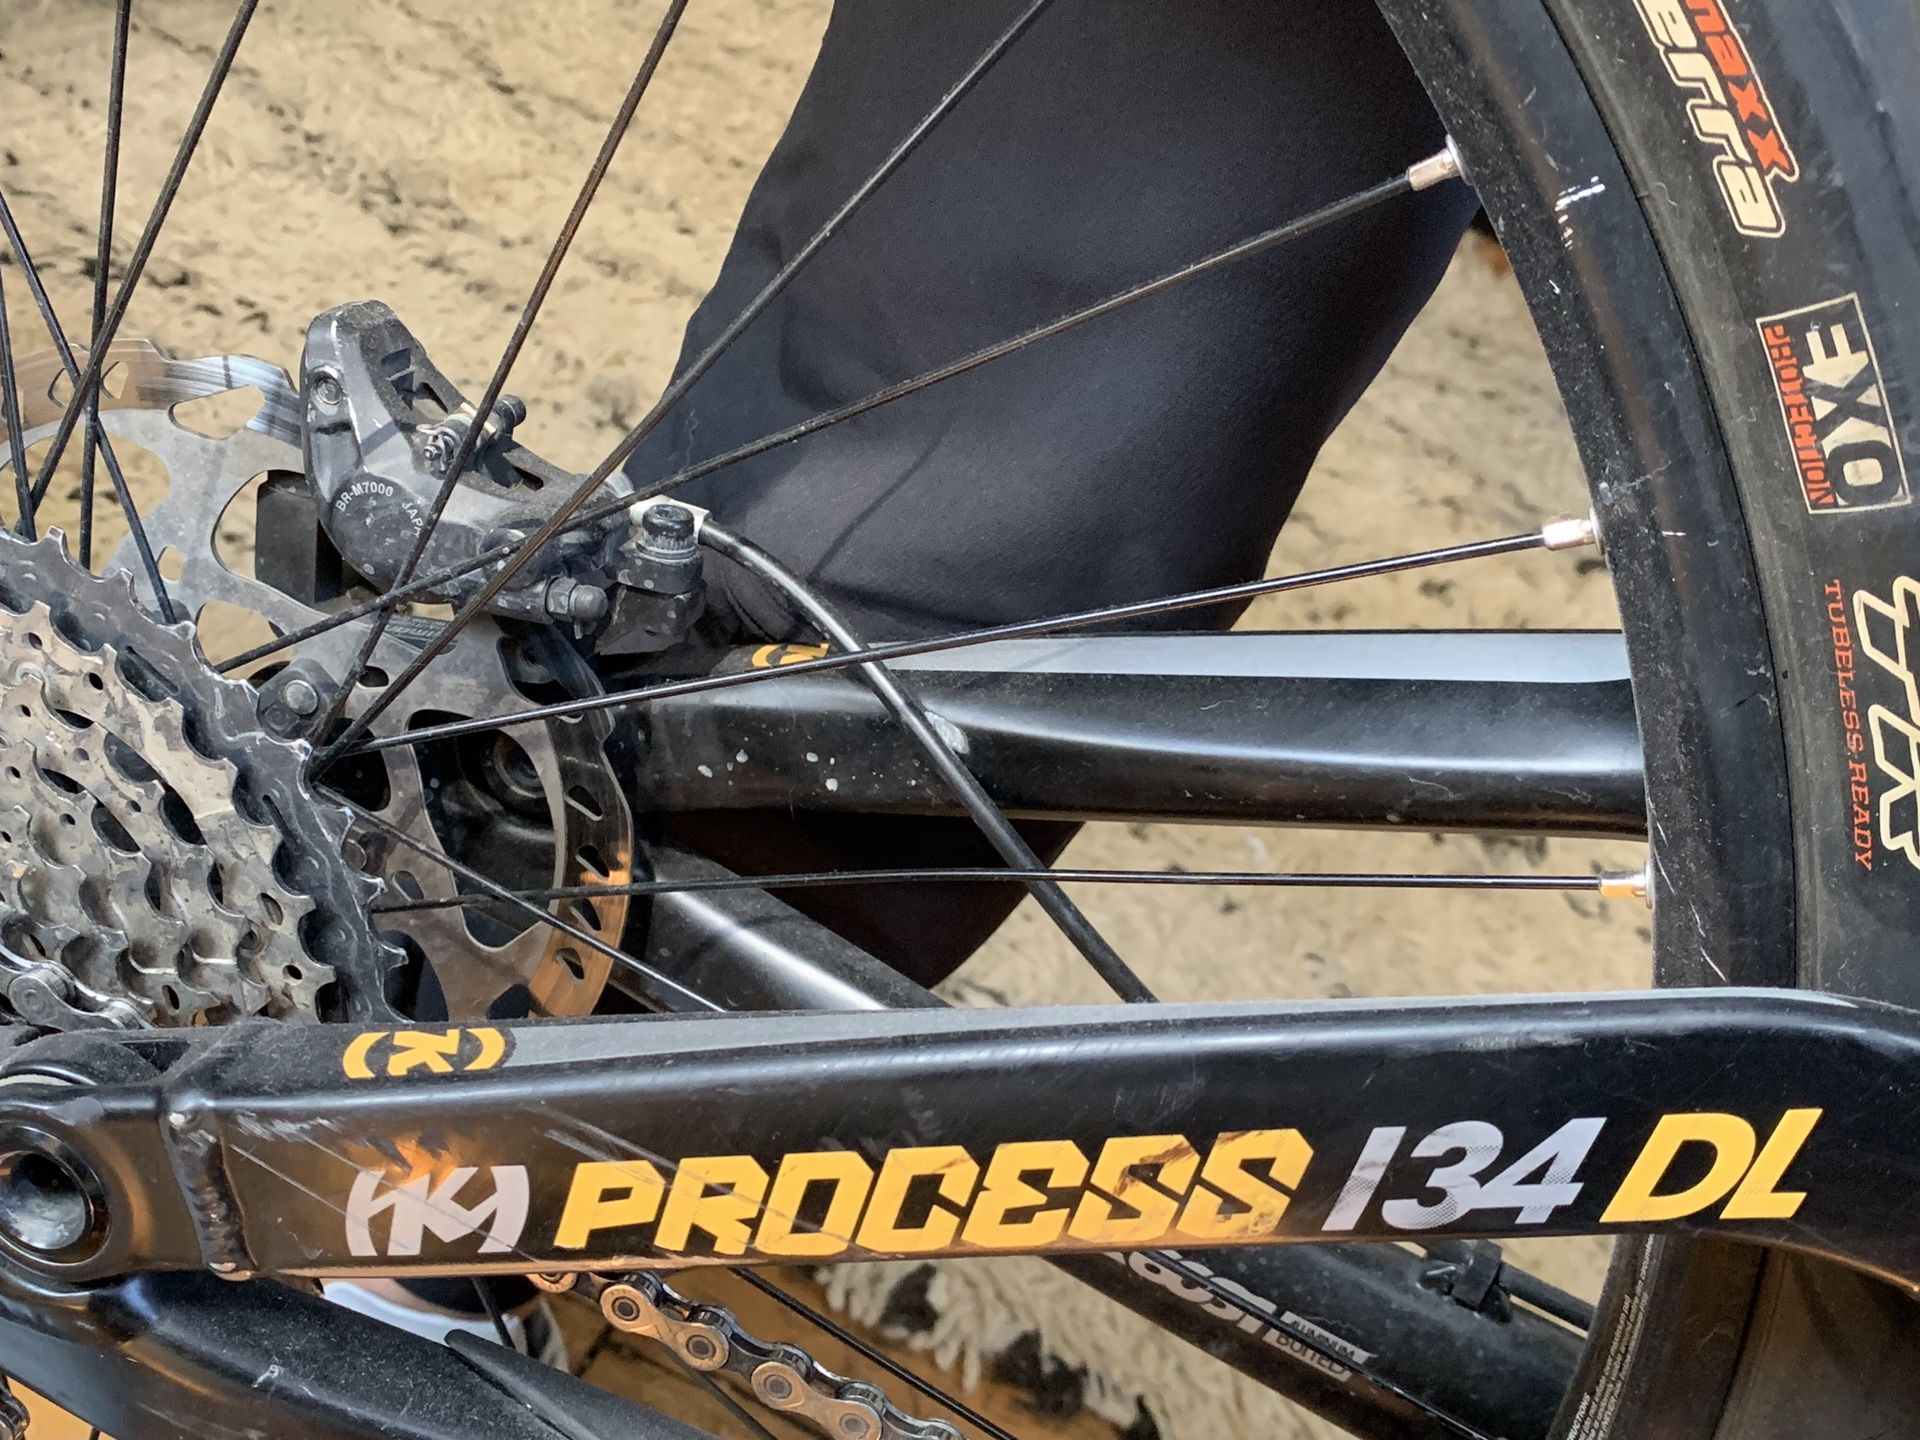 2017 Kona process 134 DL Mountain bike